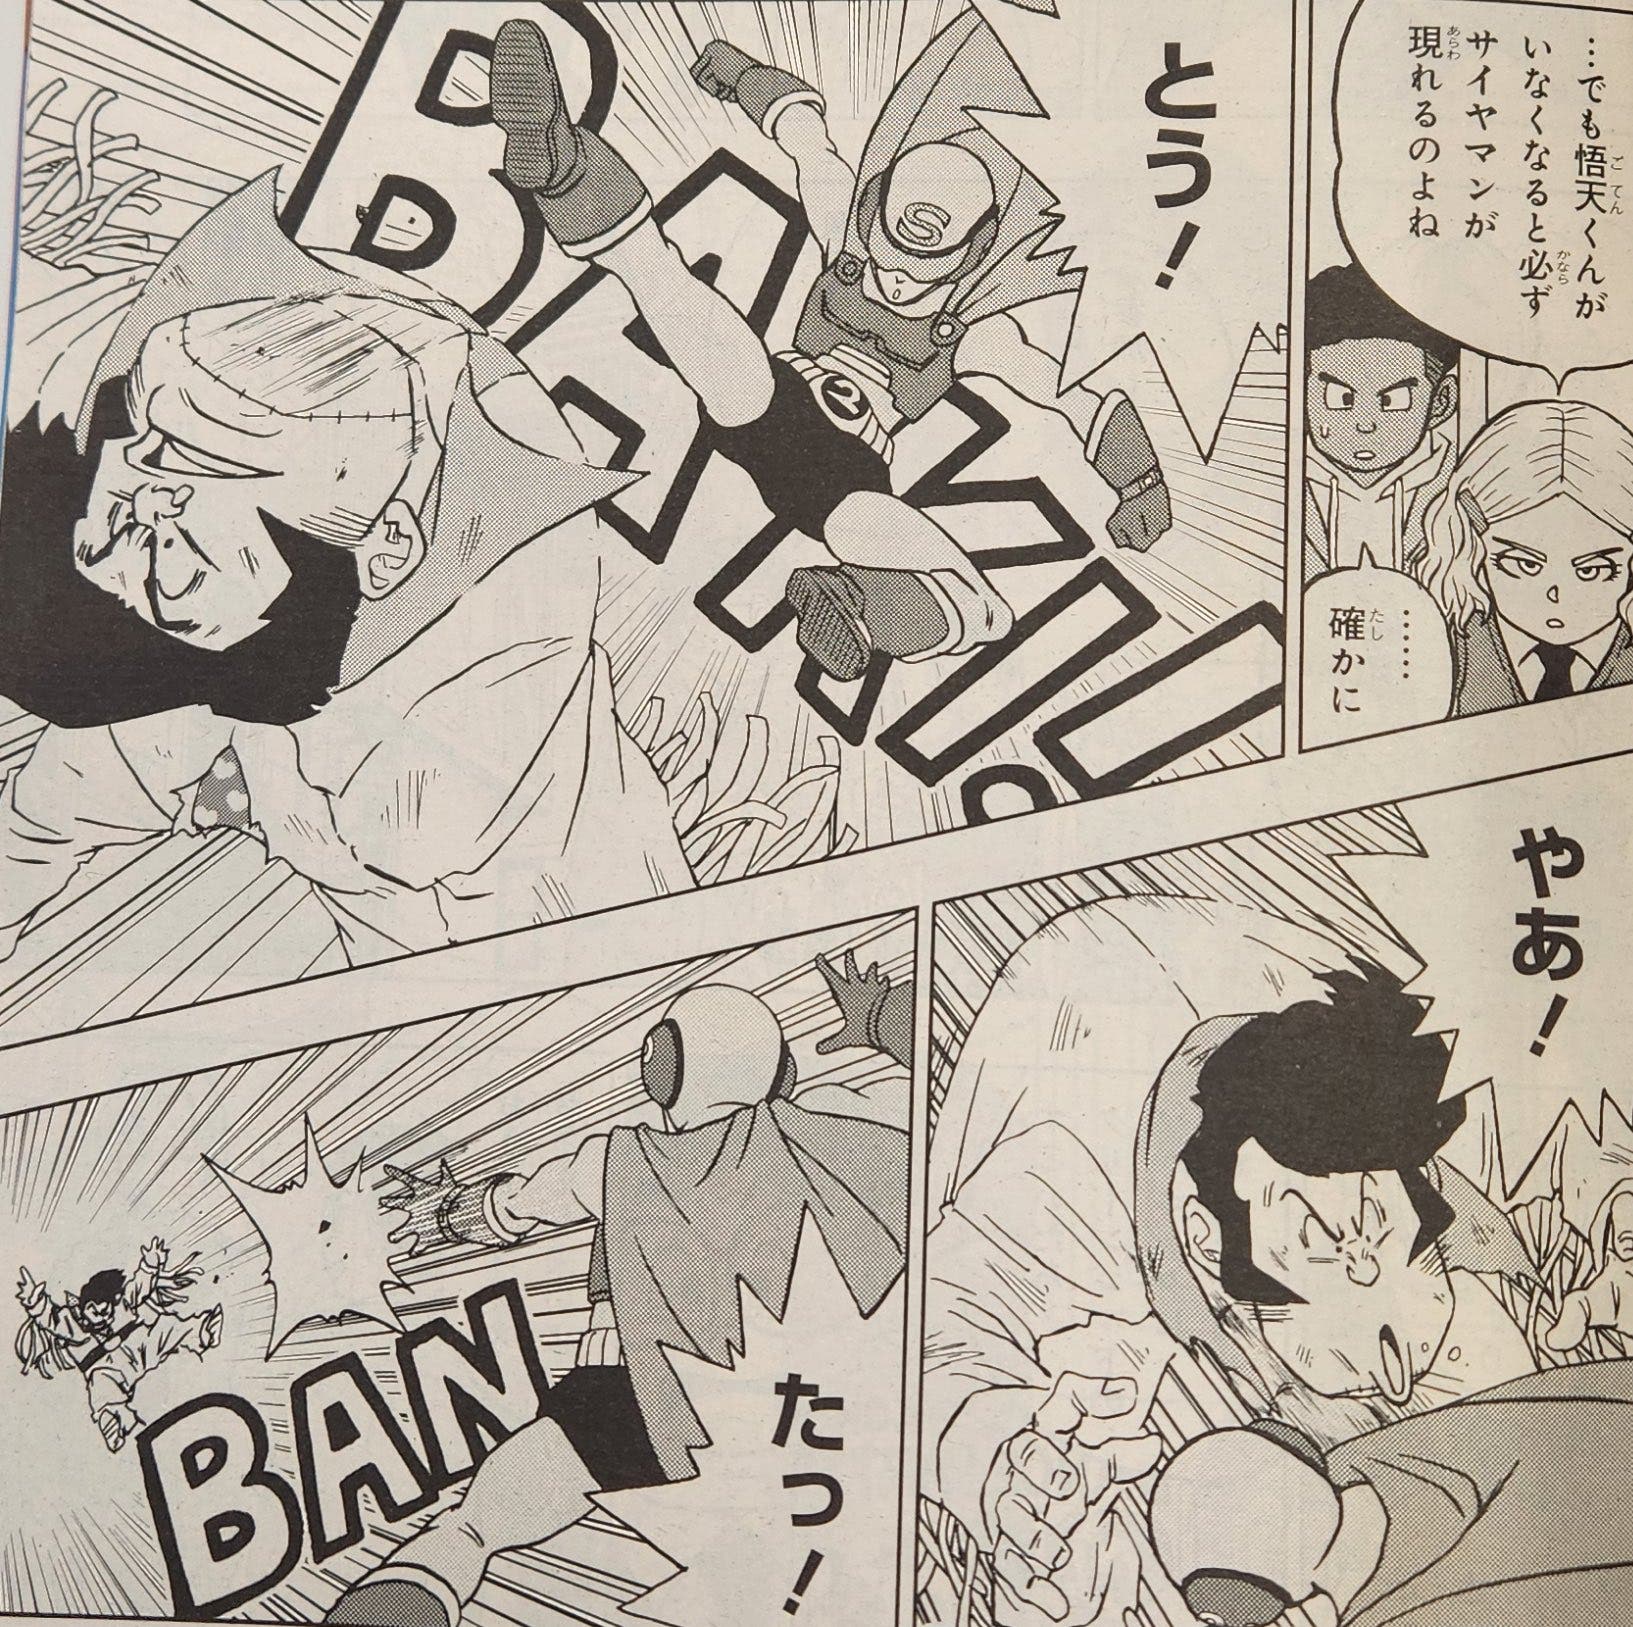 Dragon Ball Super manga 89 español completo manga plus: cuándo